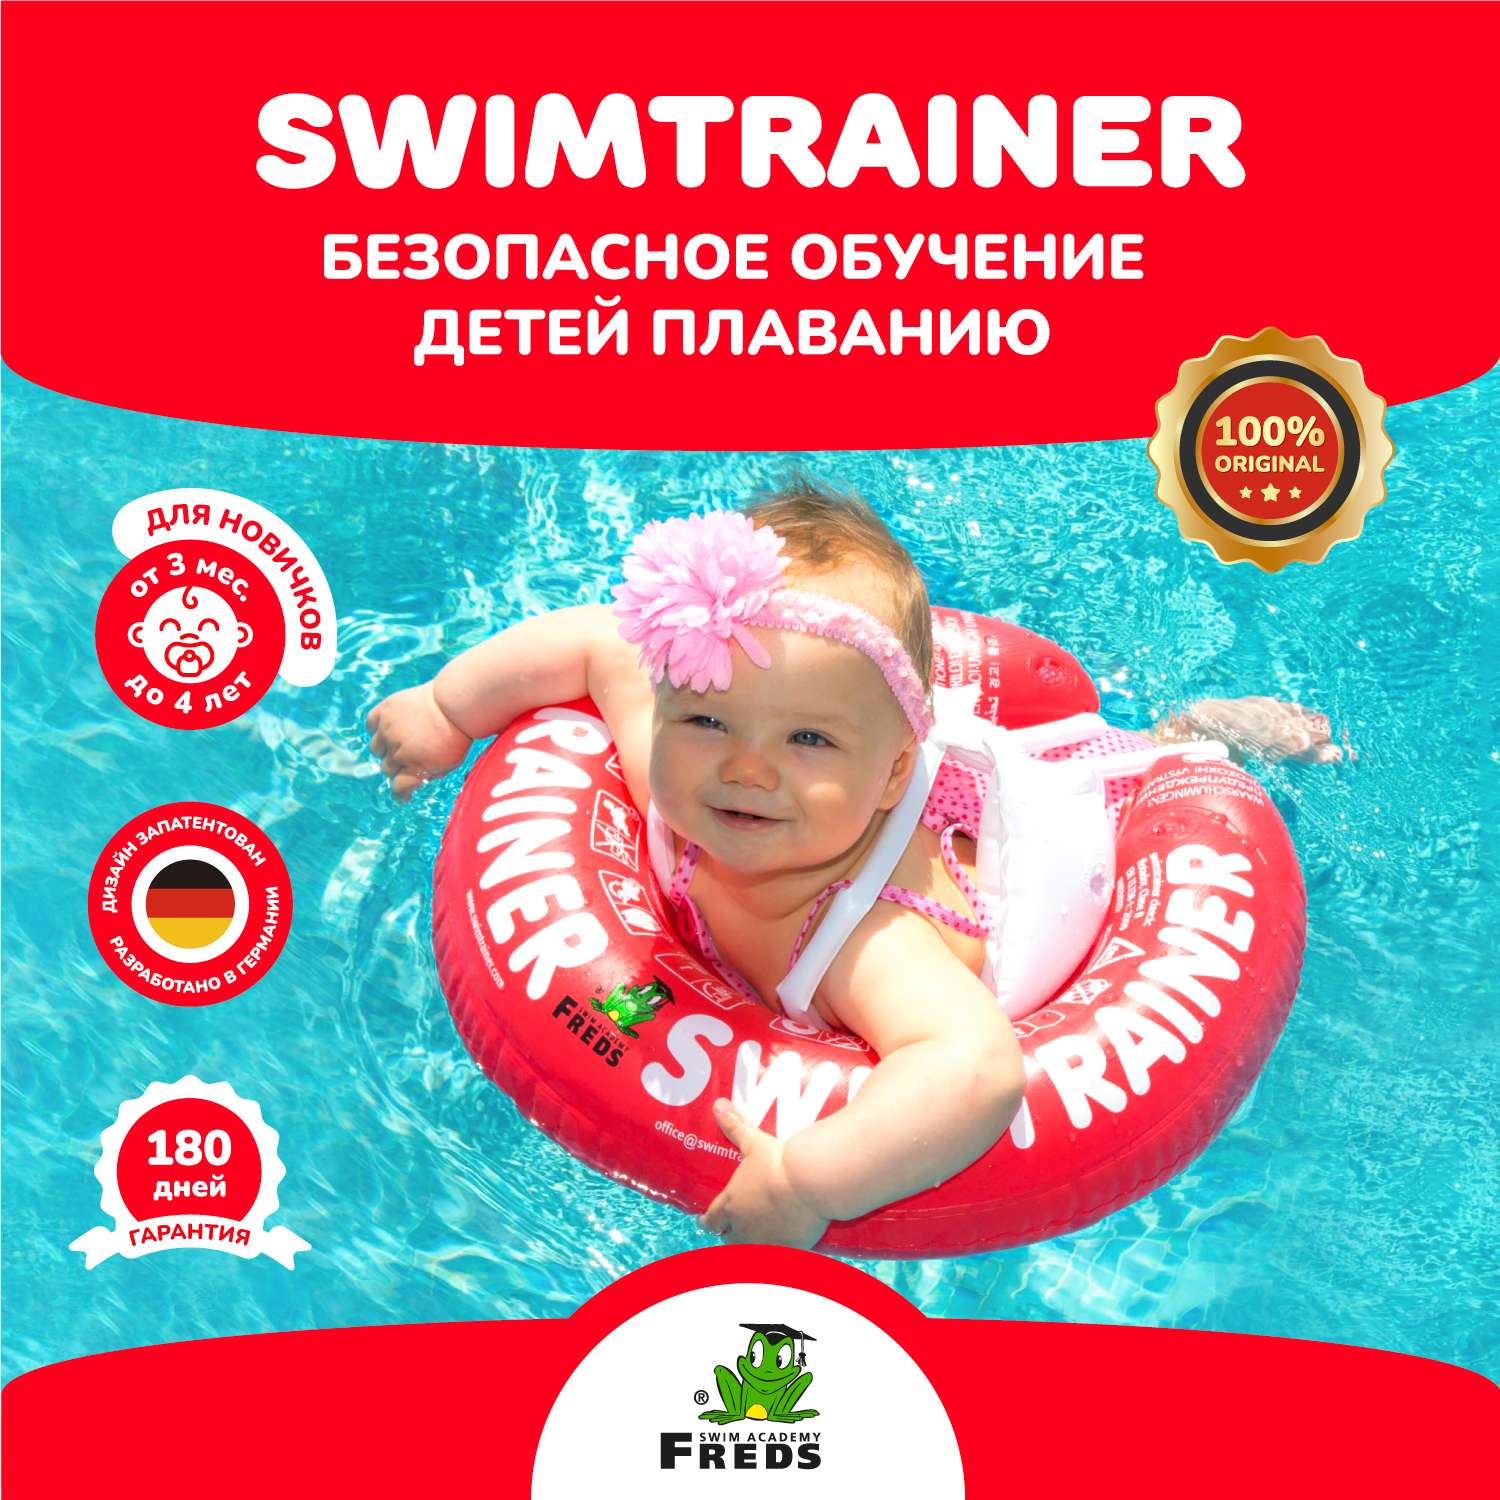 Круг надувной Freds Swim Academy Swimtrainer «Сlassic» для обучения плаванию (3 мес-4 года) Красный - фото 1